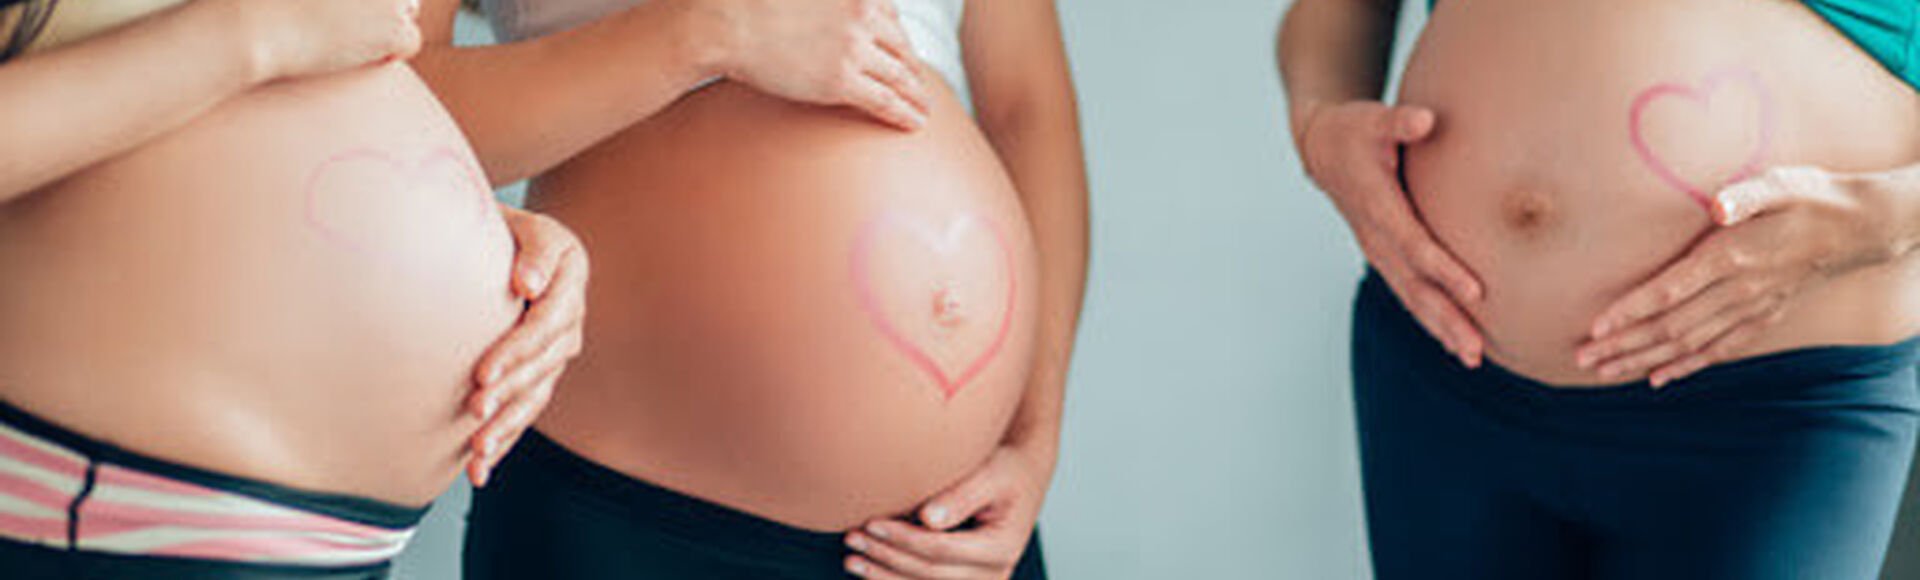 cuidados en el tercer trimestre de embarazo